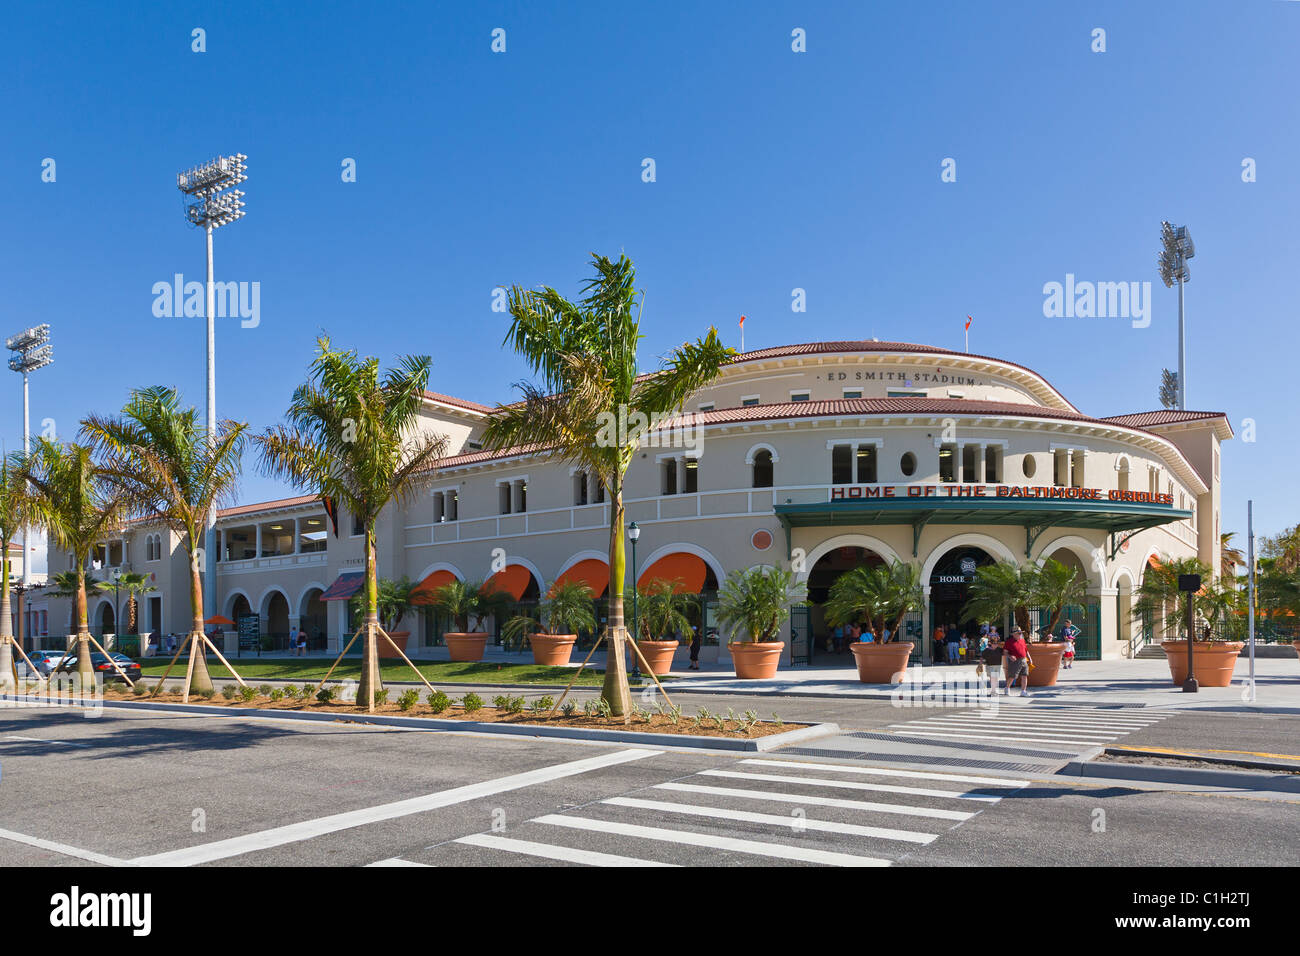 Vue extérieure de l'Ed Smith Stadium Stade de baseball d'entraînement de printemps des orioles de Baltimore à Sarasota en Floride Banque D'Images